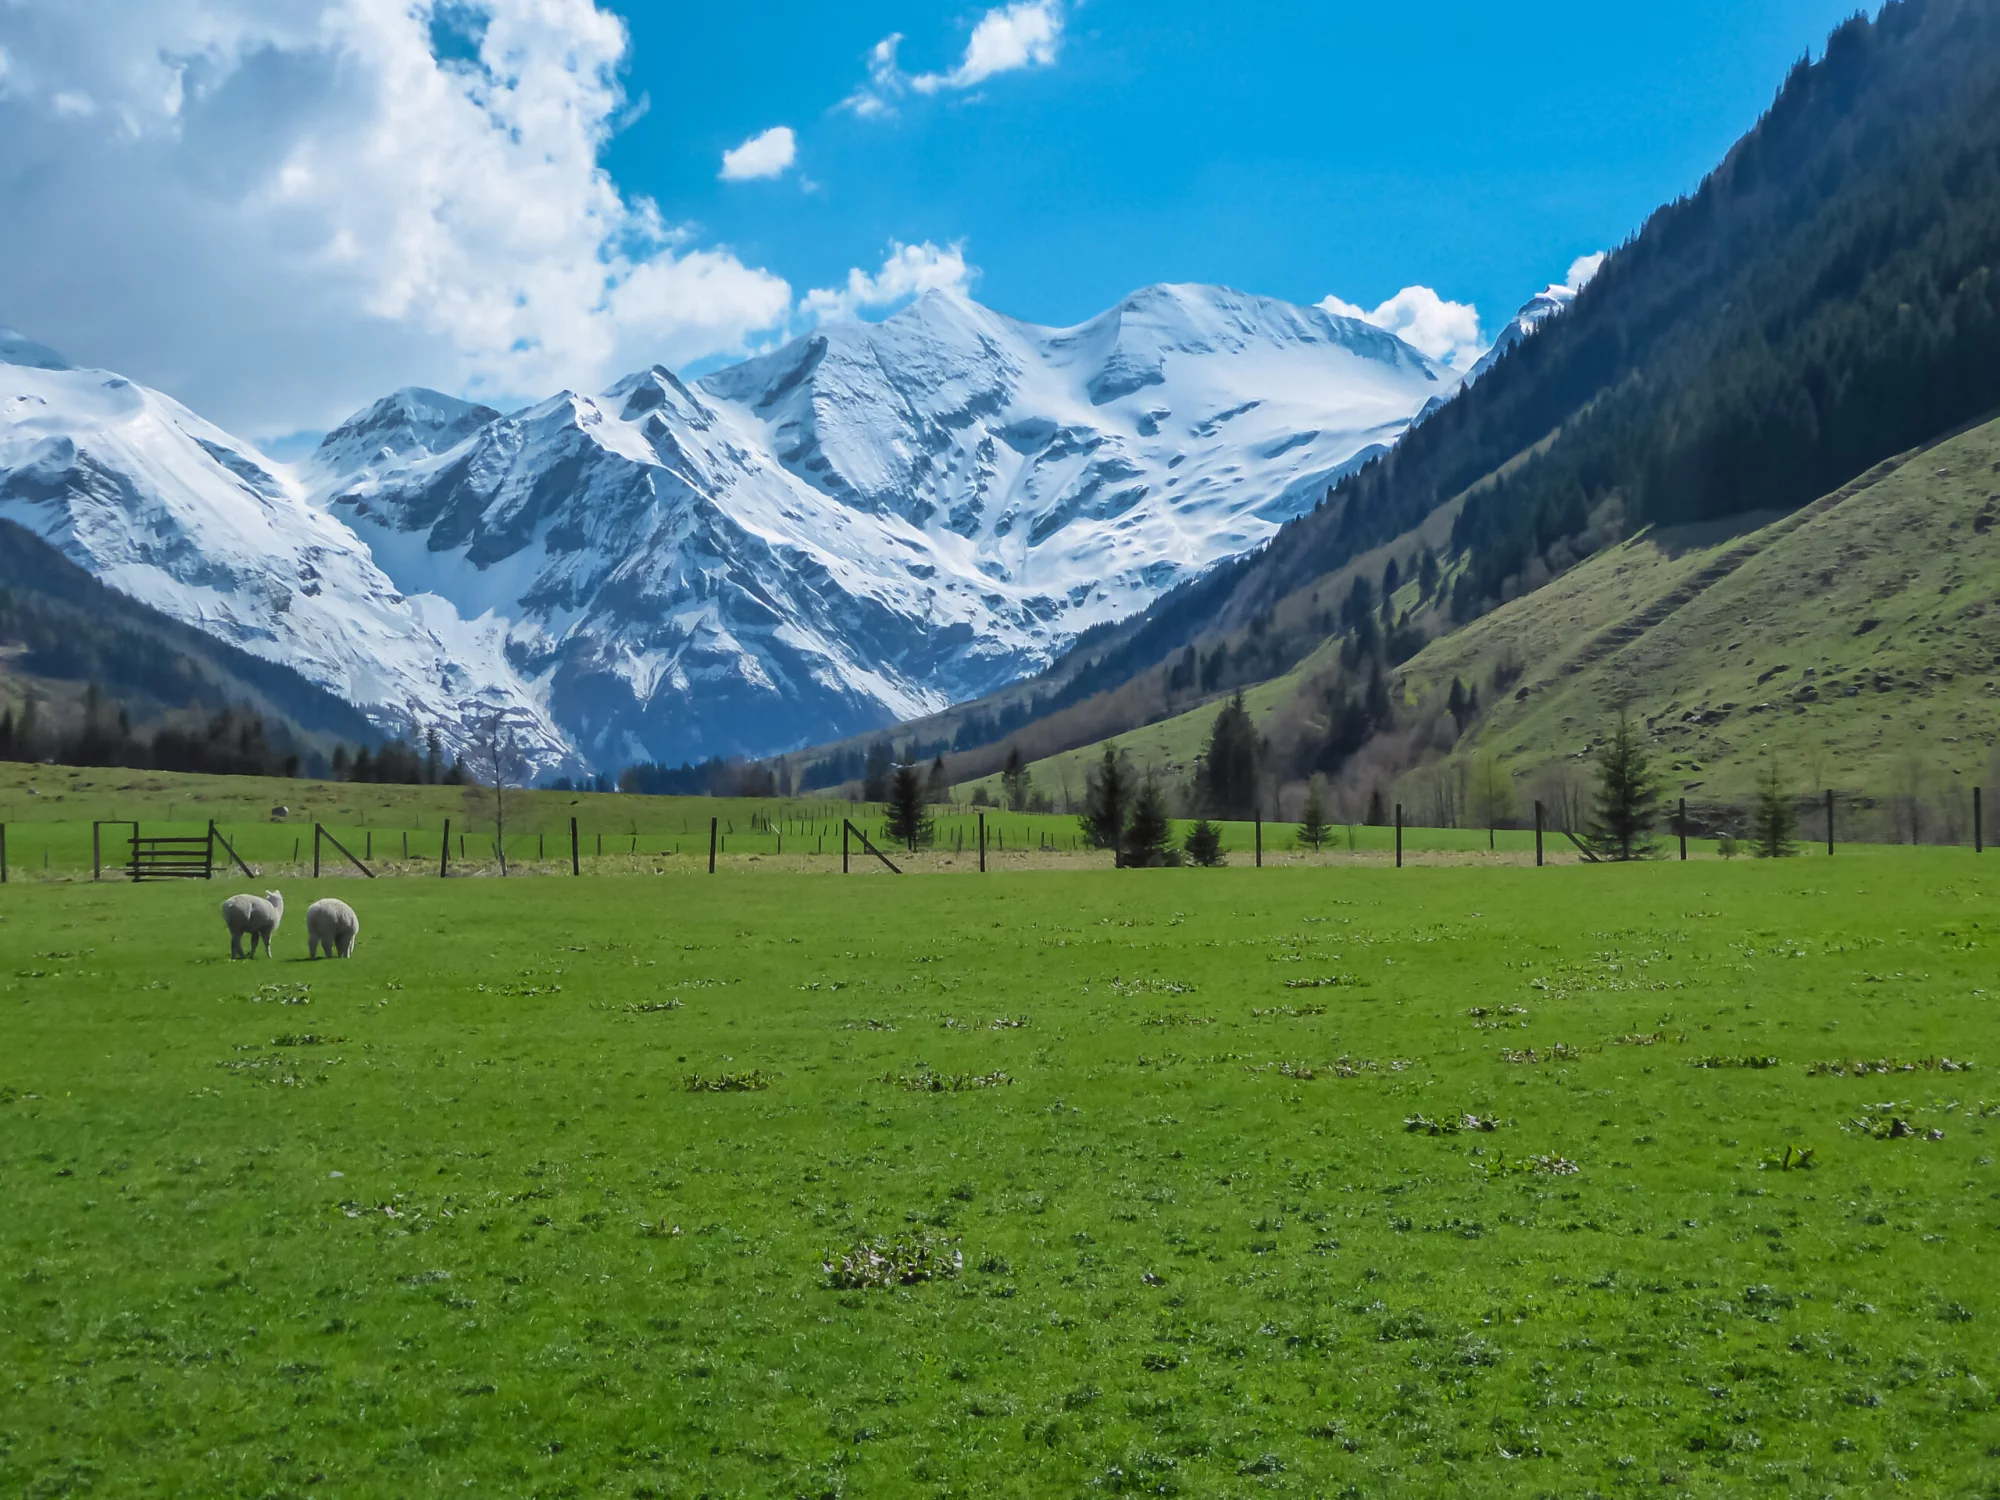 Ovejas pastando en un exuberante prado alpino verde con vista panorámica de los picos nevados del Alto Tauern en Fusch am Grossglockner, Salzburgo, Austria. Hermosa naturaleza en los remotos Alpes austriacos